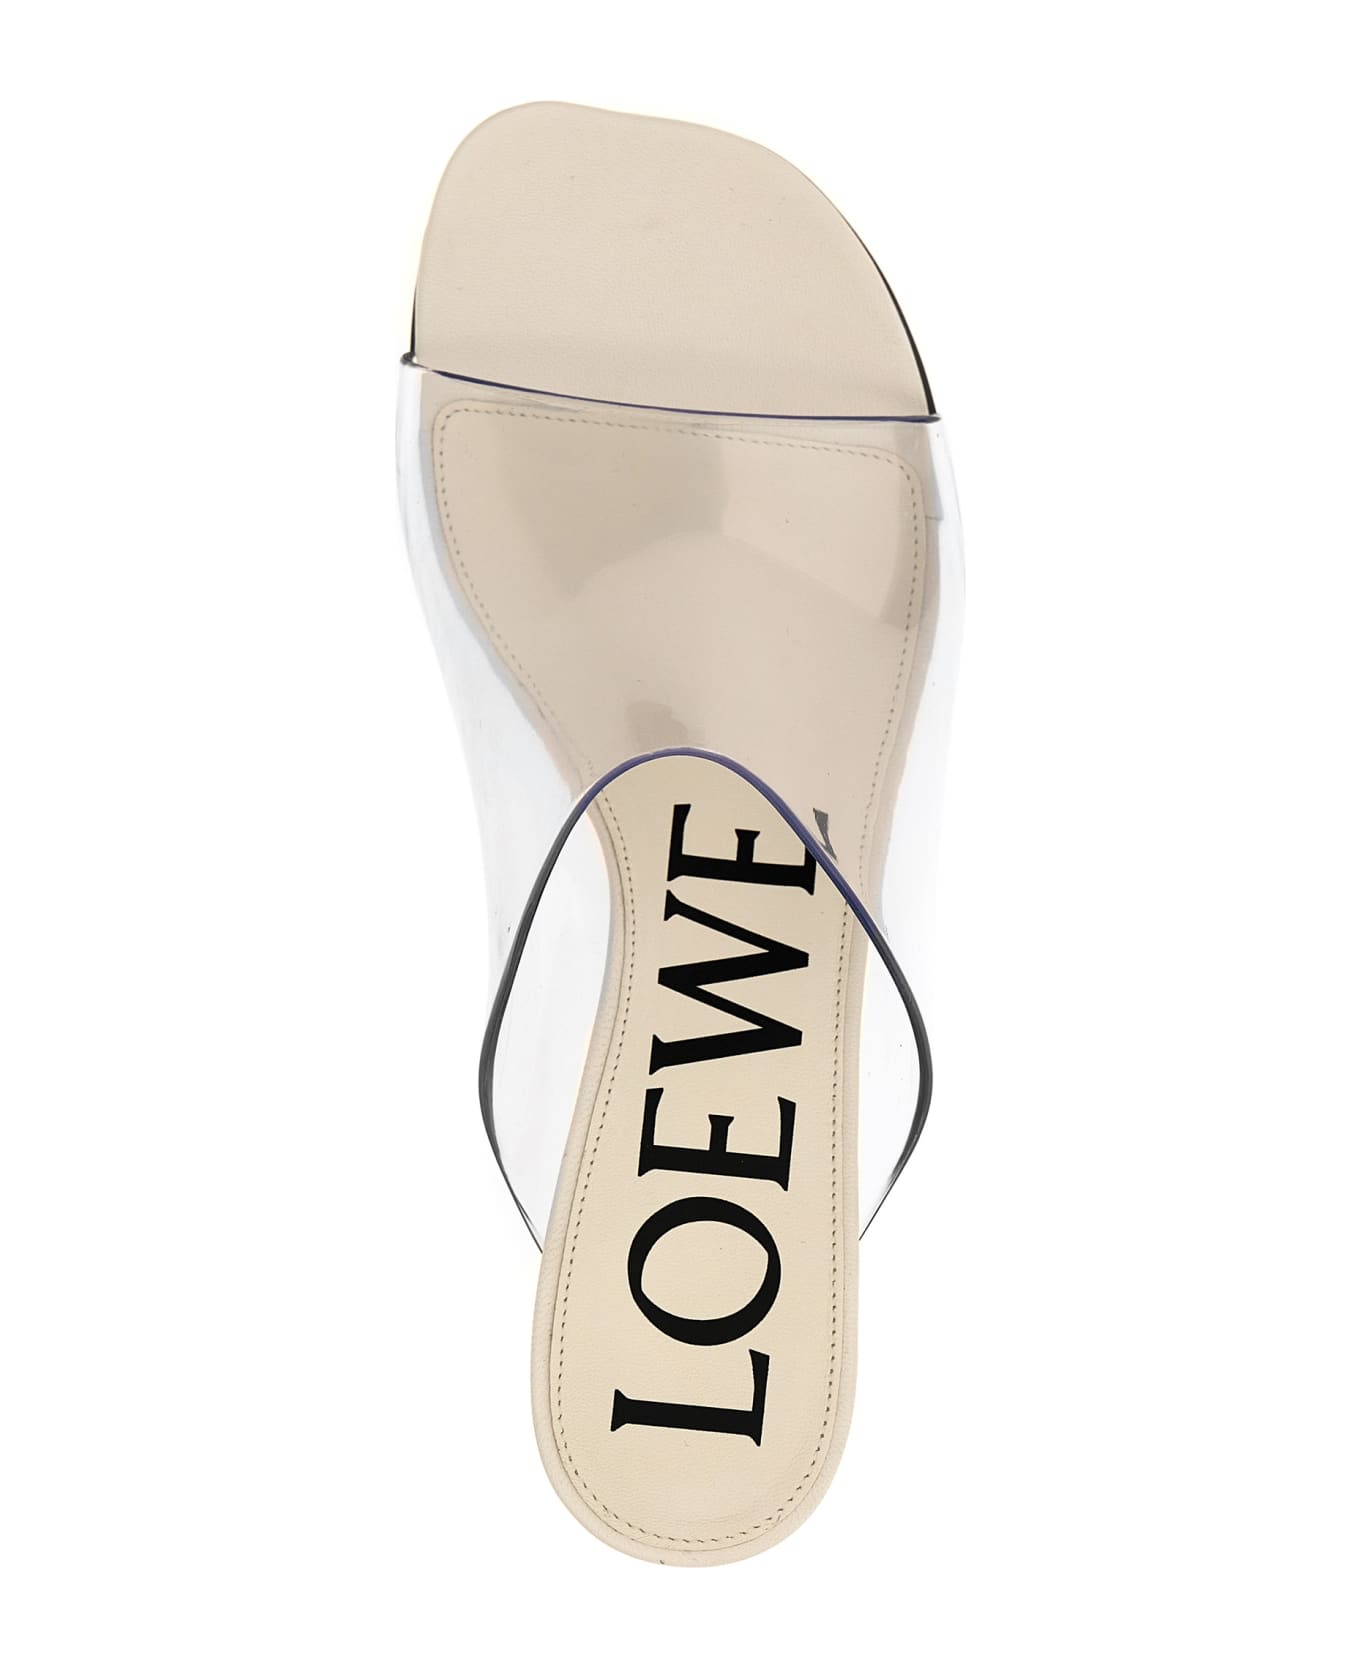 Loewe 'toy' Slides - White サンダル